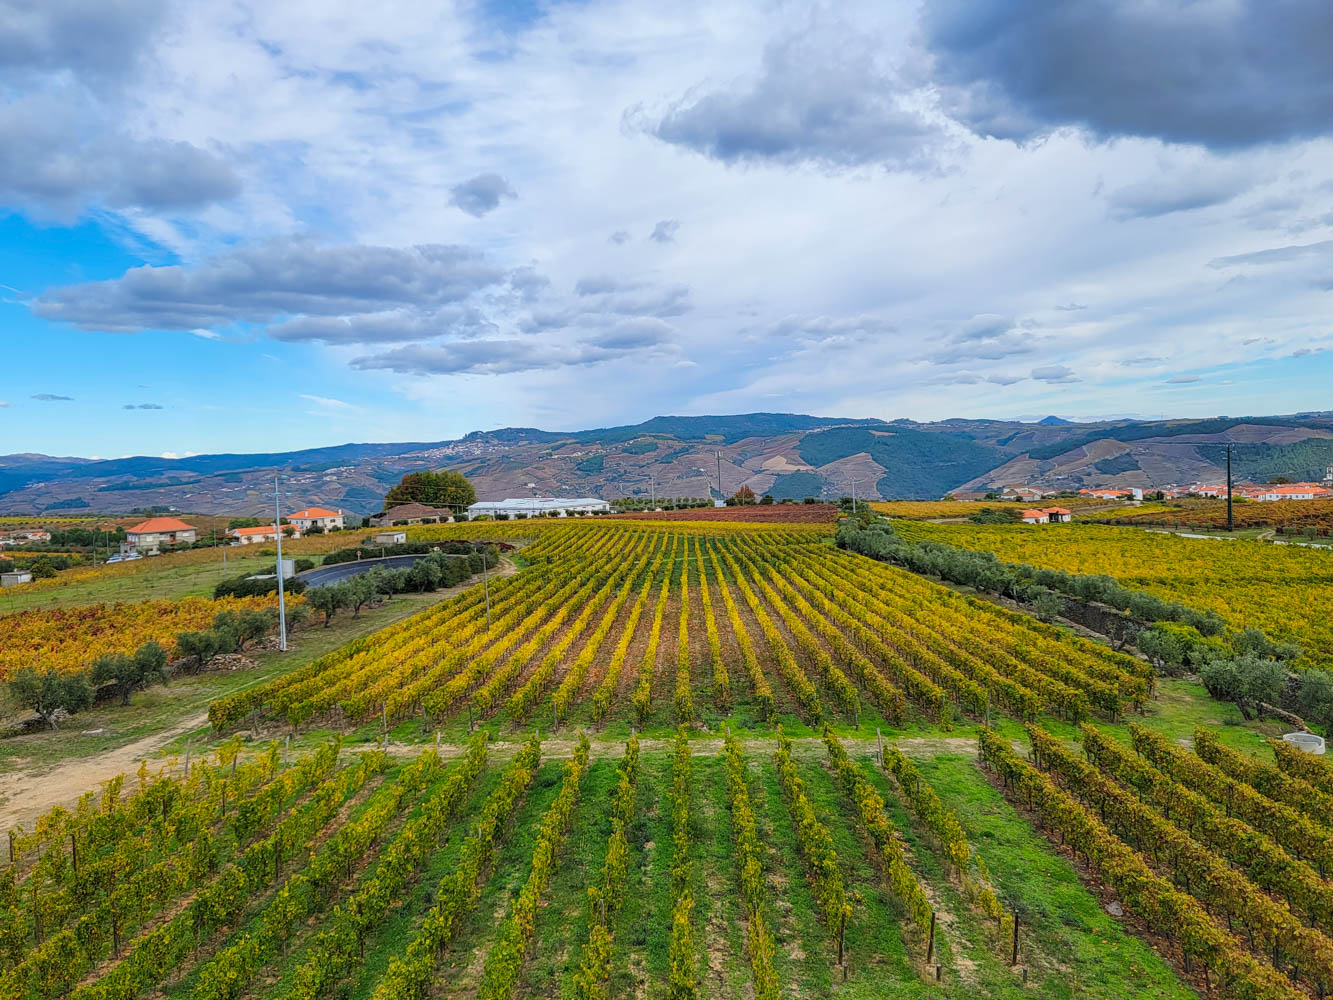 Vineyard in Portugal